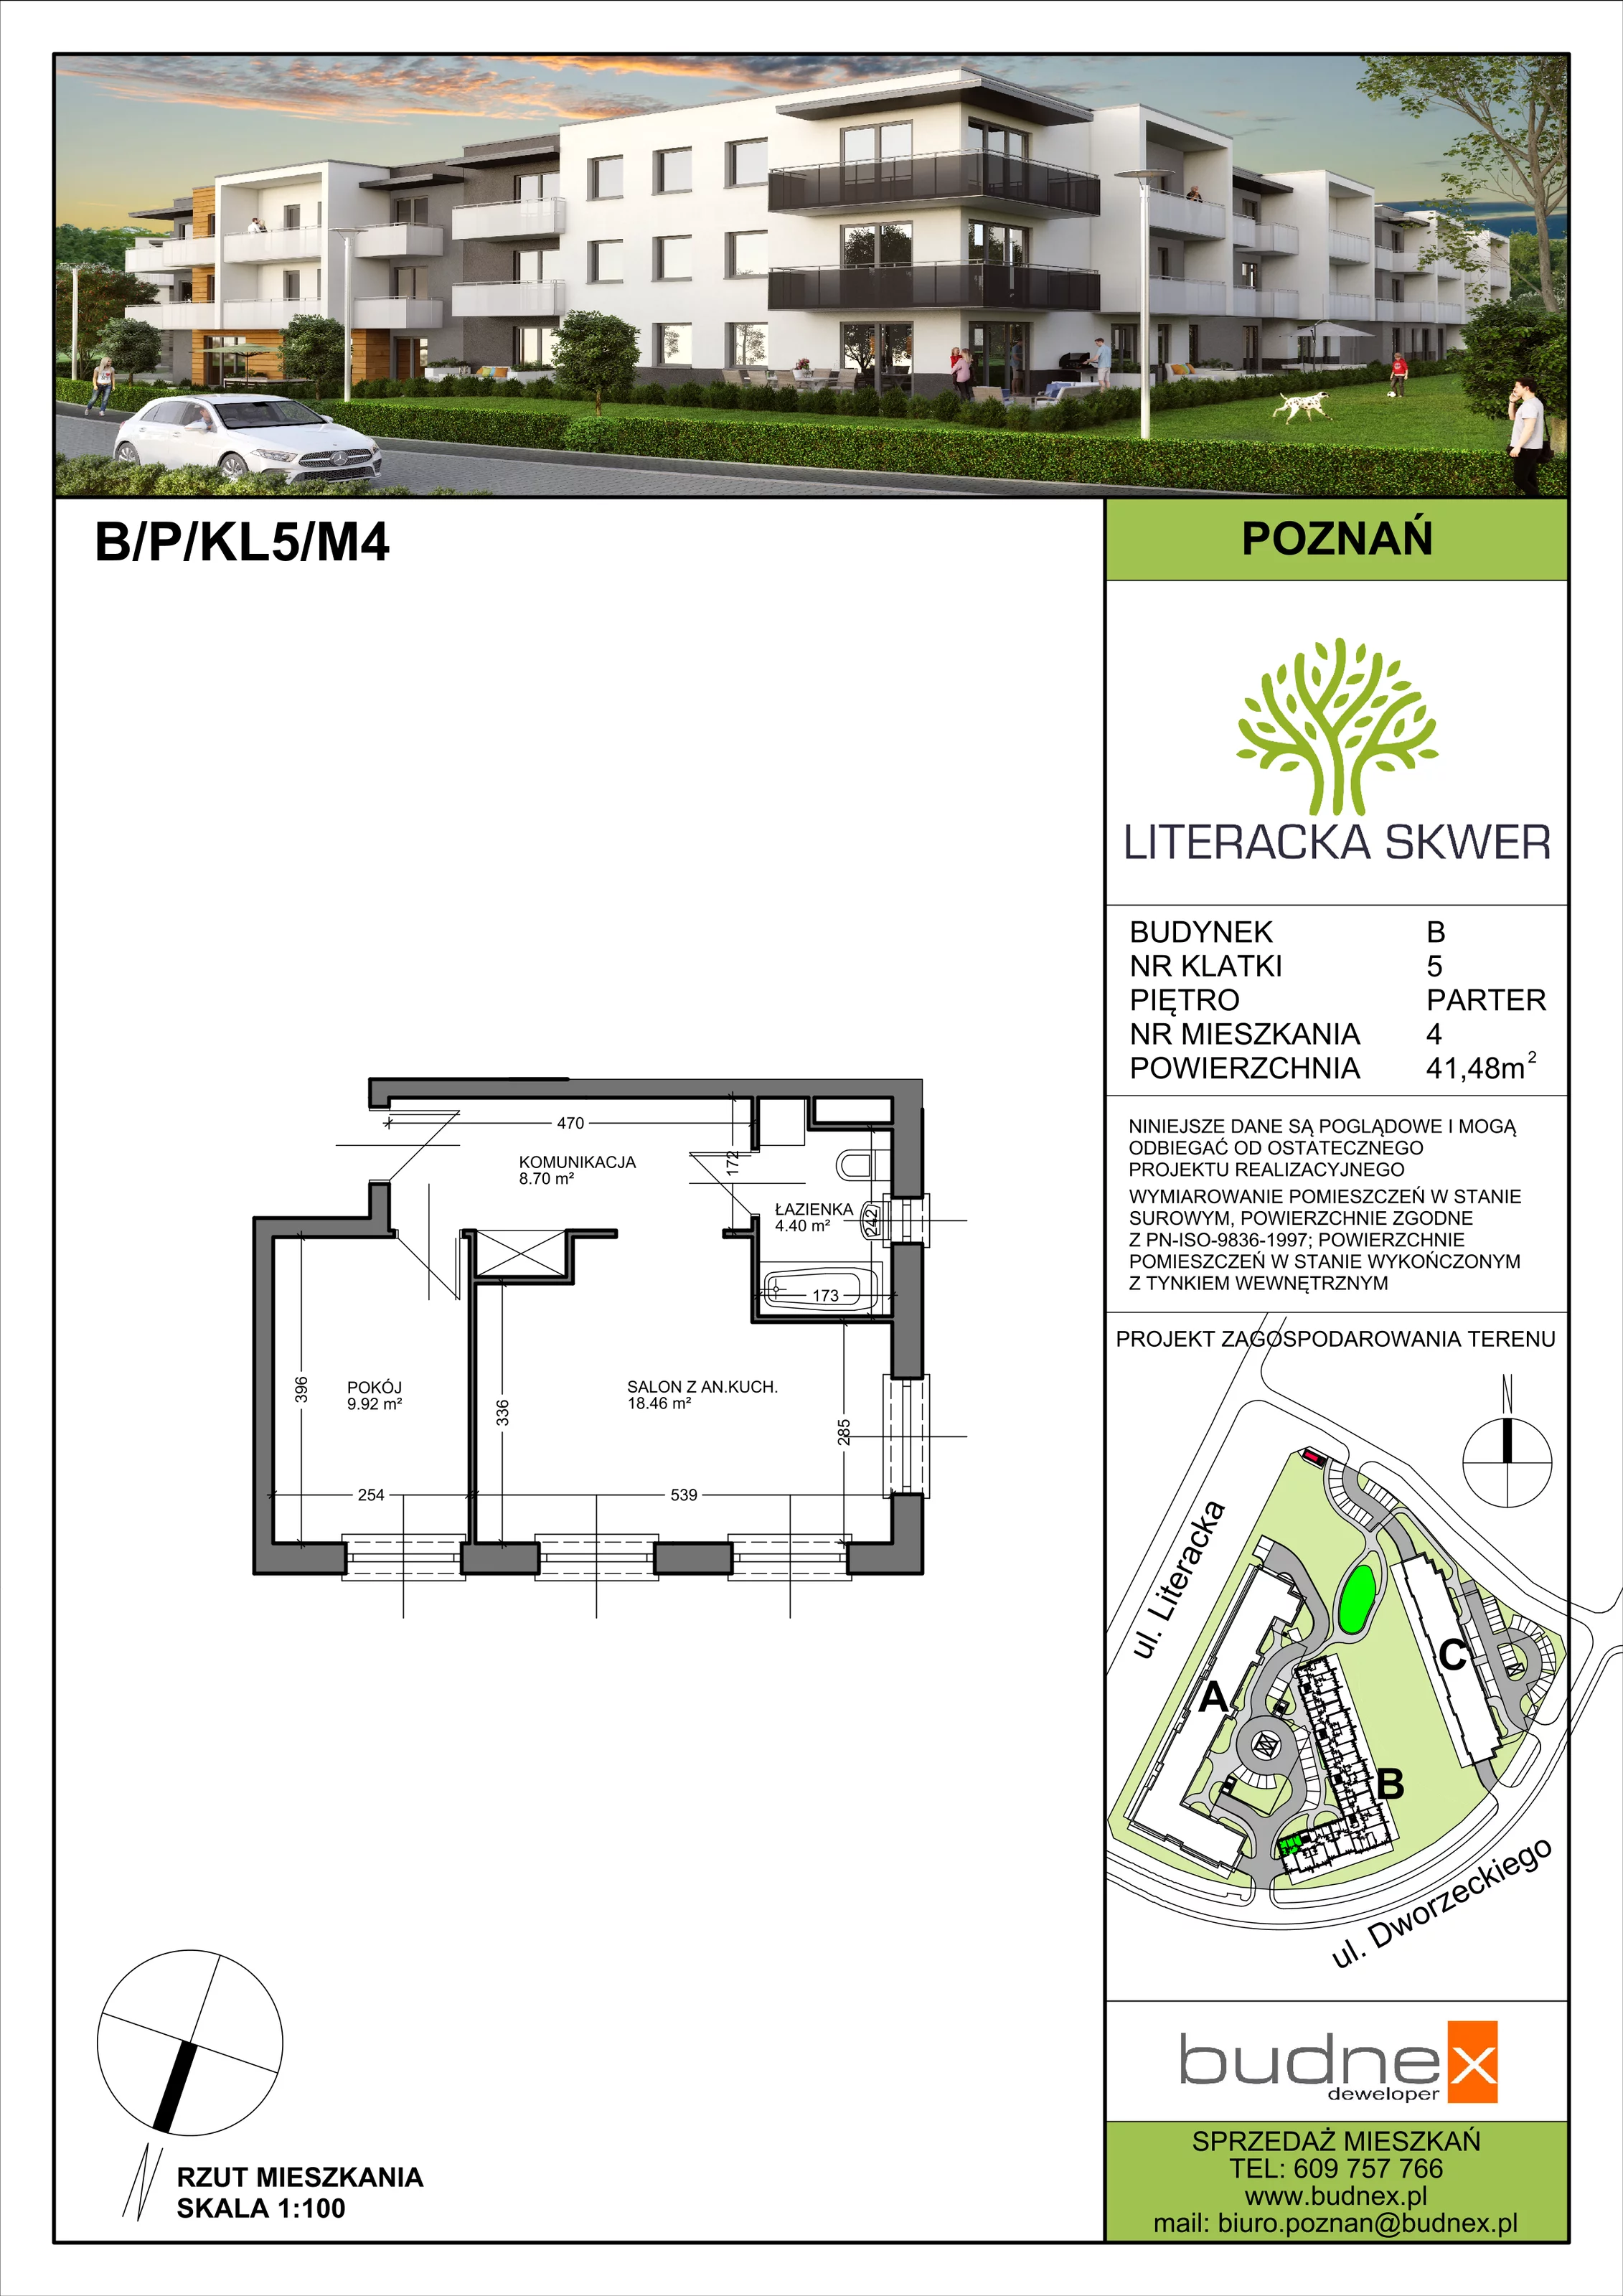 Mieszkanie 41,48 m², parter, oferta nr 5/M4, Literacka Skwer - Etap B, Poznań, Strzeszyn, Strzeszyn, ul. Literacka